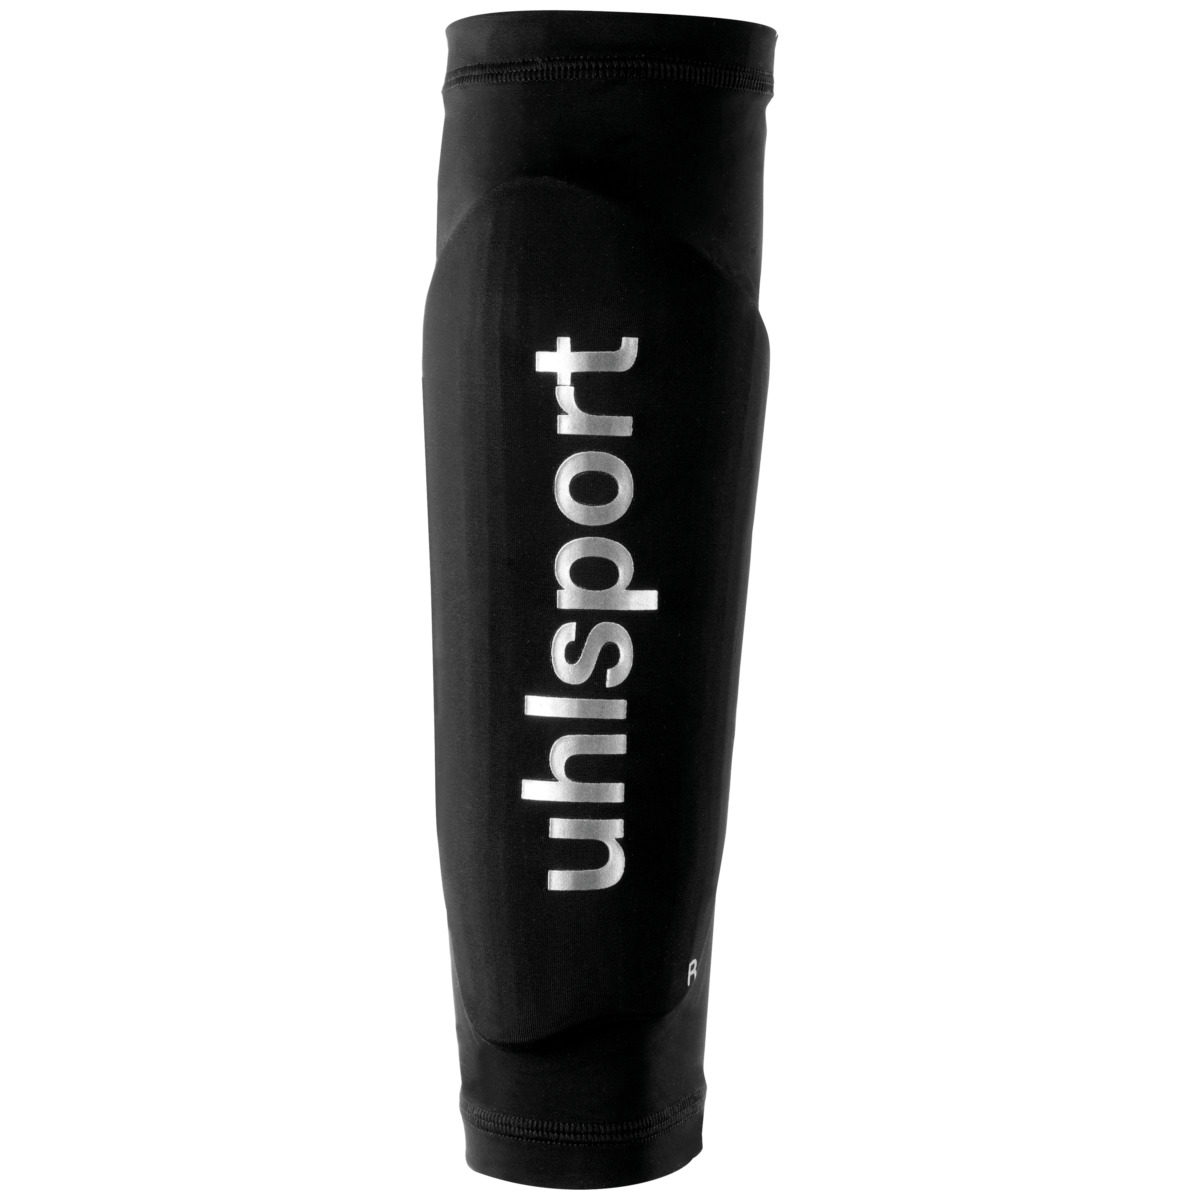 Uhlsport SHINGUARD SLEEVES Tibia Shin Pad Sleeves Sleeve BLACK size Senior NWT 